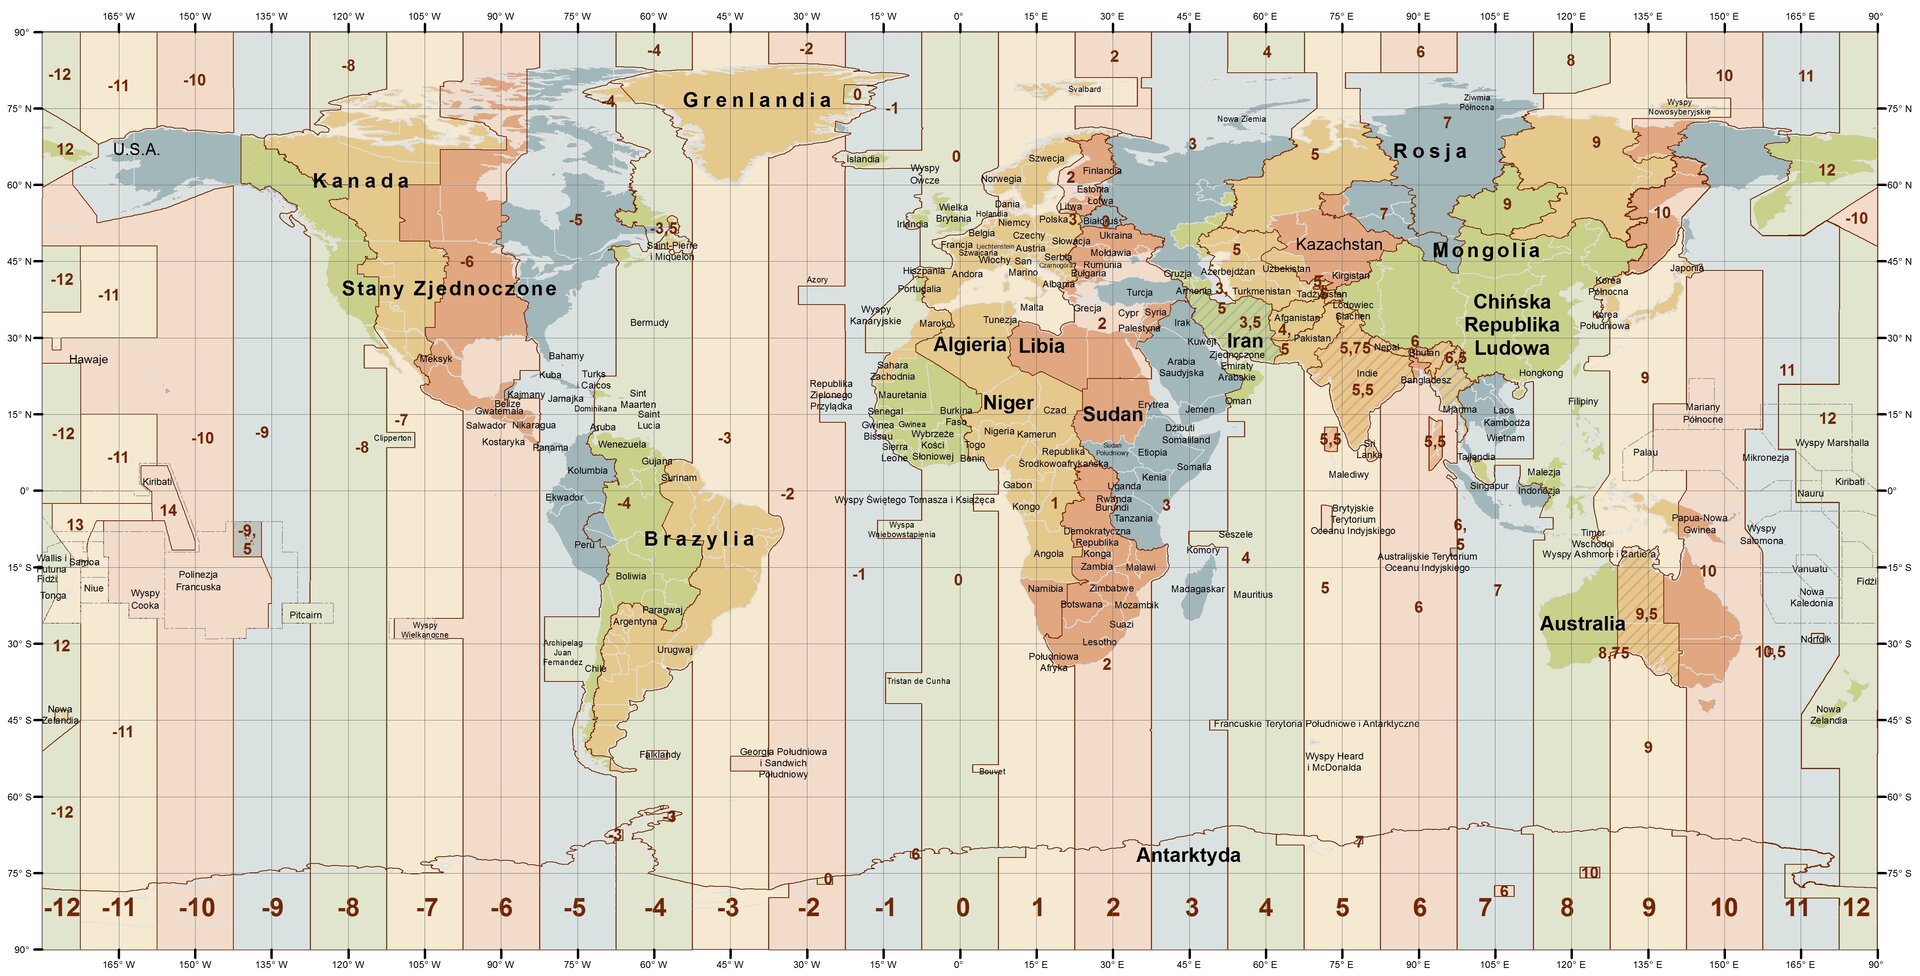 Ilustracja przedstawia umowny podział Ziemi na 24 strefy czasowe. Powierzchnię Ziemi przedstawiono w odwzorowaniu walcowym. Zaznaczono na niej państwa leżące w różnych strefach czasowych. Południki oznaczone są poziomymi liniami prostymi, wyznaczają kierunek północ-południe i na mapie obejmują zakres 15 stopni. Równoleżniki wyznaczają kierunek wschód-zachód, są poziome i równoległe do równika. Każda ze stref obejmuje 15 stopni długości geograficznej. Są one dodatkowo wyróżnione kolorystycznie – od lewej: zielony, żółty, czerwony, niebieski. Kolory powtarzają się w kolejnych strefach. W lewą, wschodnią stronę od południka zero stopni czas zmniejsza się o godzinę w każdej strefie czasowej. W prawą, zachodnią stronę – zwiększa się o godzinę.